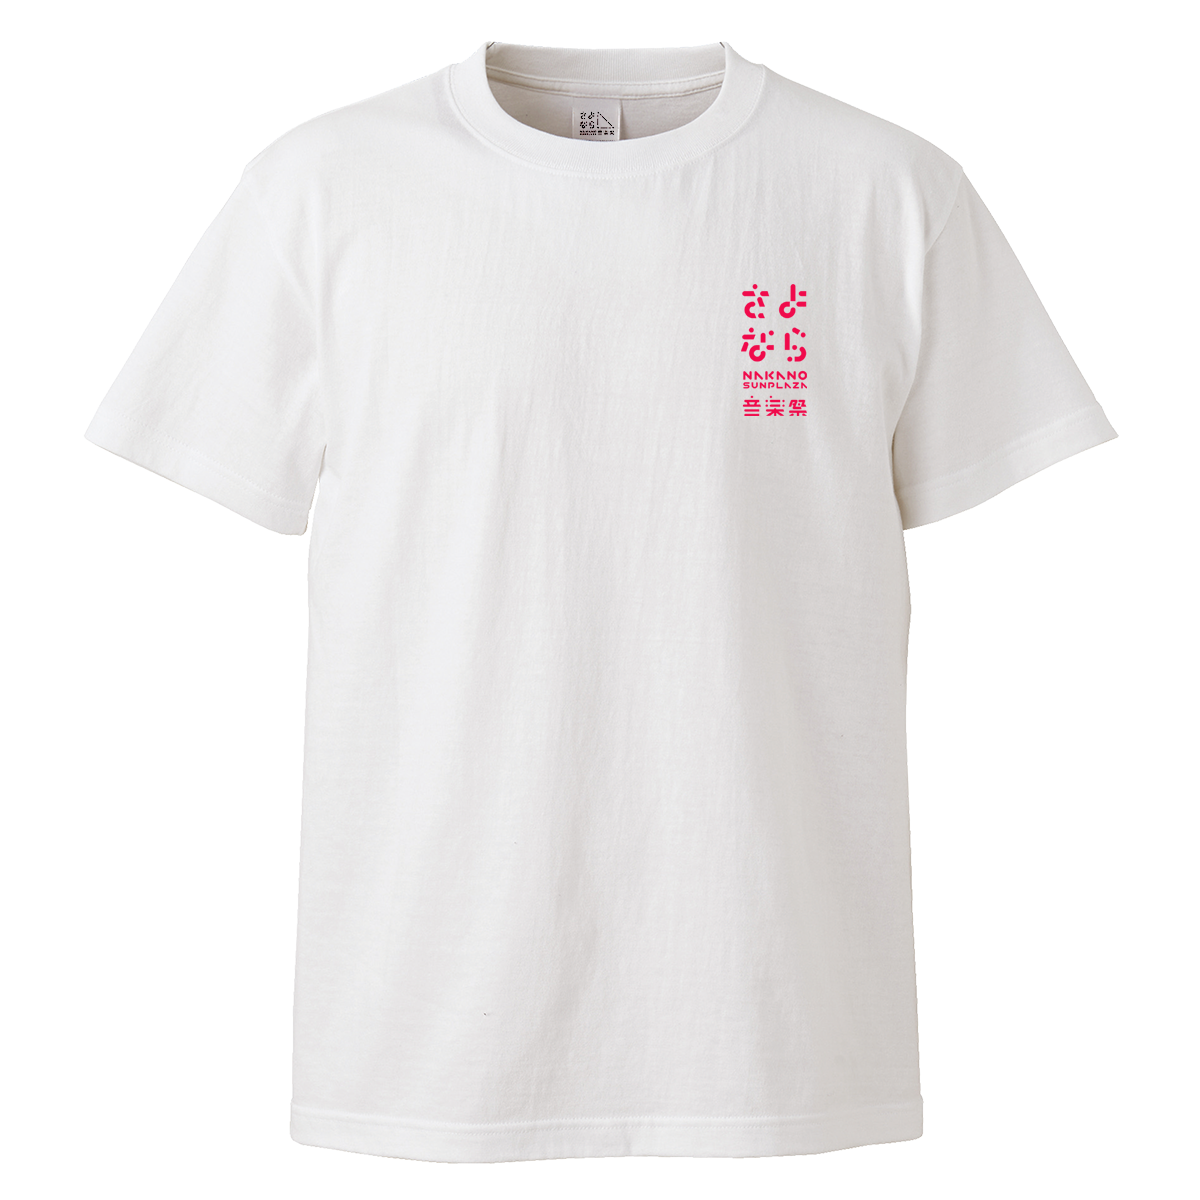 中野と音楽をこっそり愛しているあなたに。控えめワンポイントのデザイン。OFFICAL T-shirt B【ホワイト】